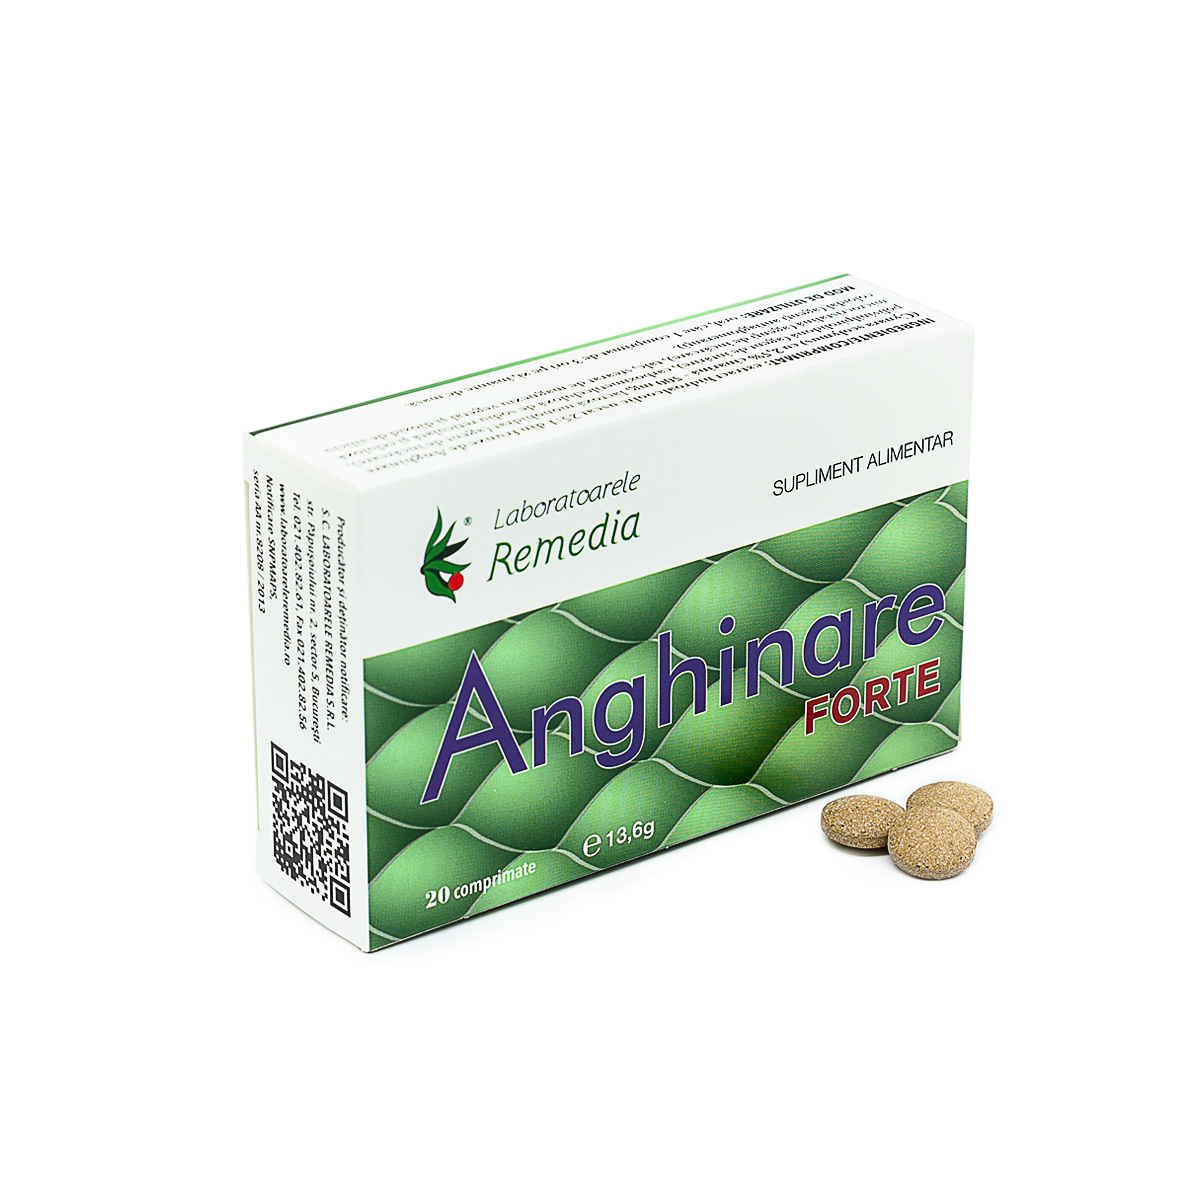 Afecțiuni hepato-biliare - Anghinare Forte 500mg, 20 comprimate, Remedia, farmaciamare.ro